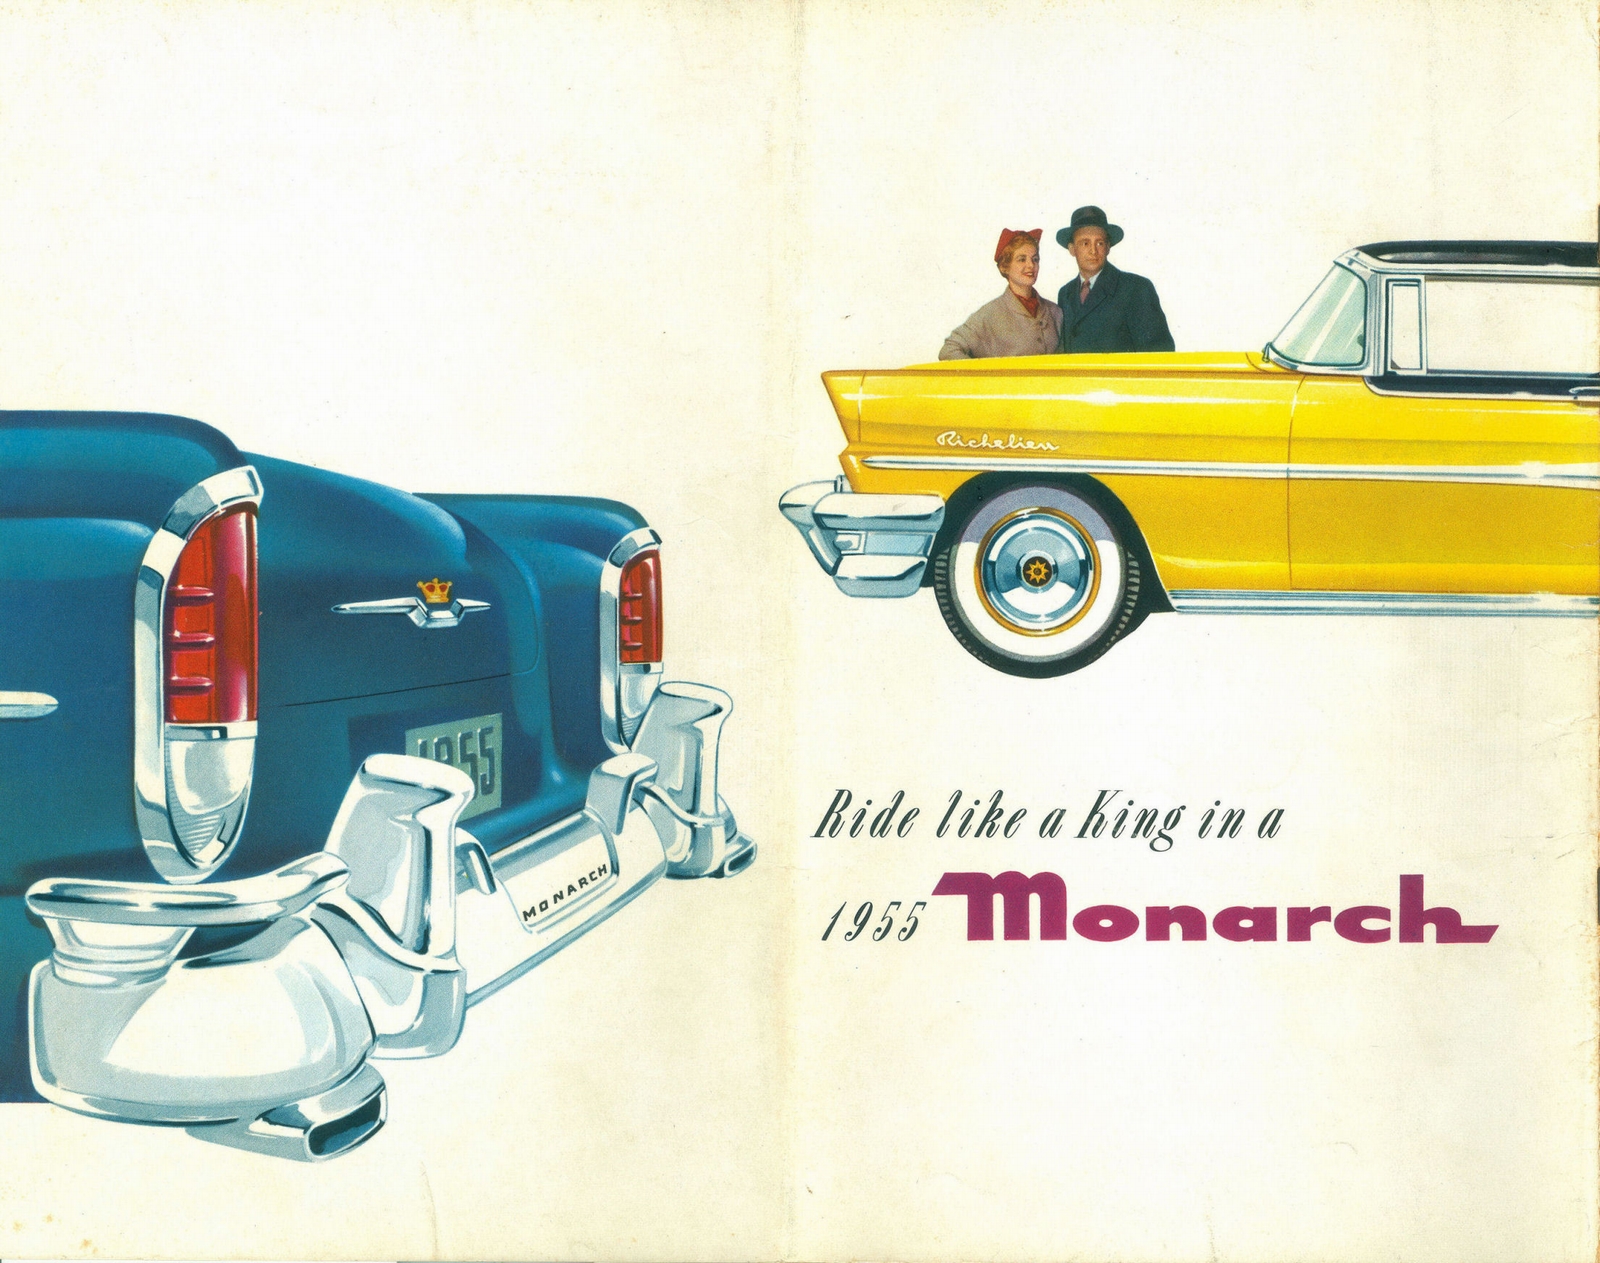 n_1955 Monarch-20.jpg